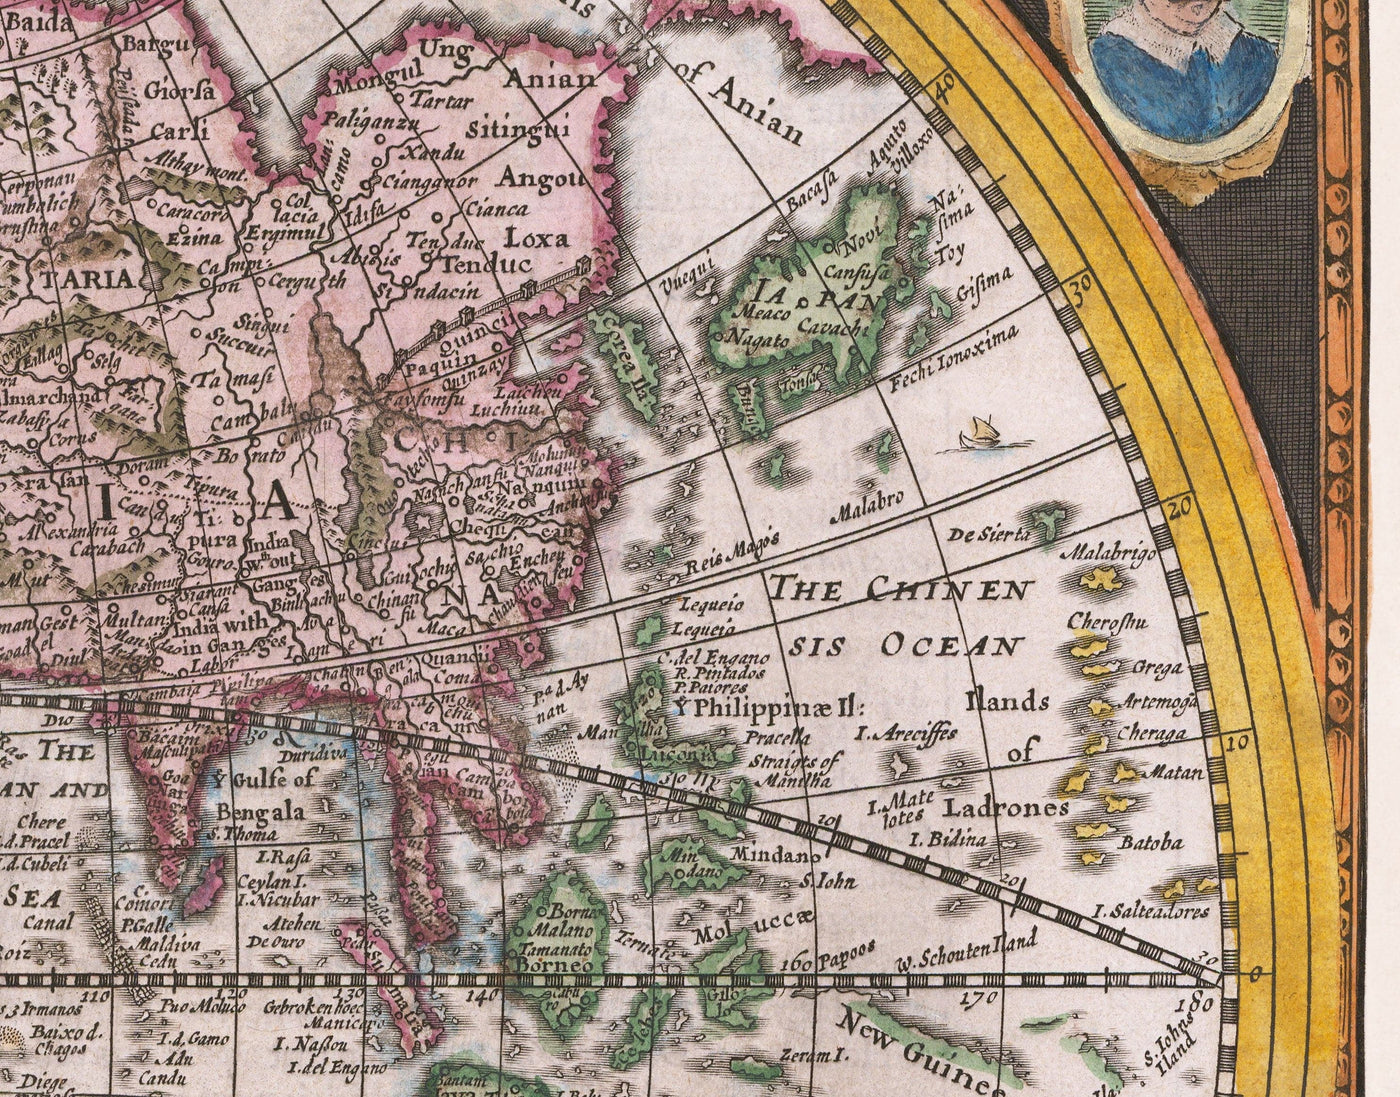 Carte du monde de la vieille monde, 1626 par John Vitesse